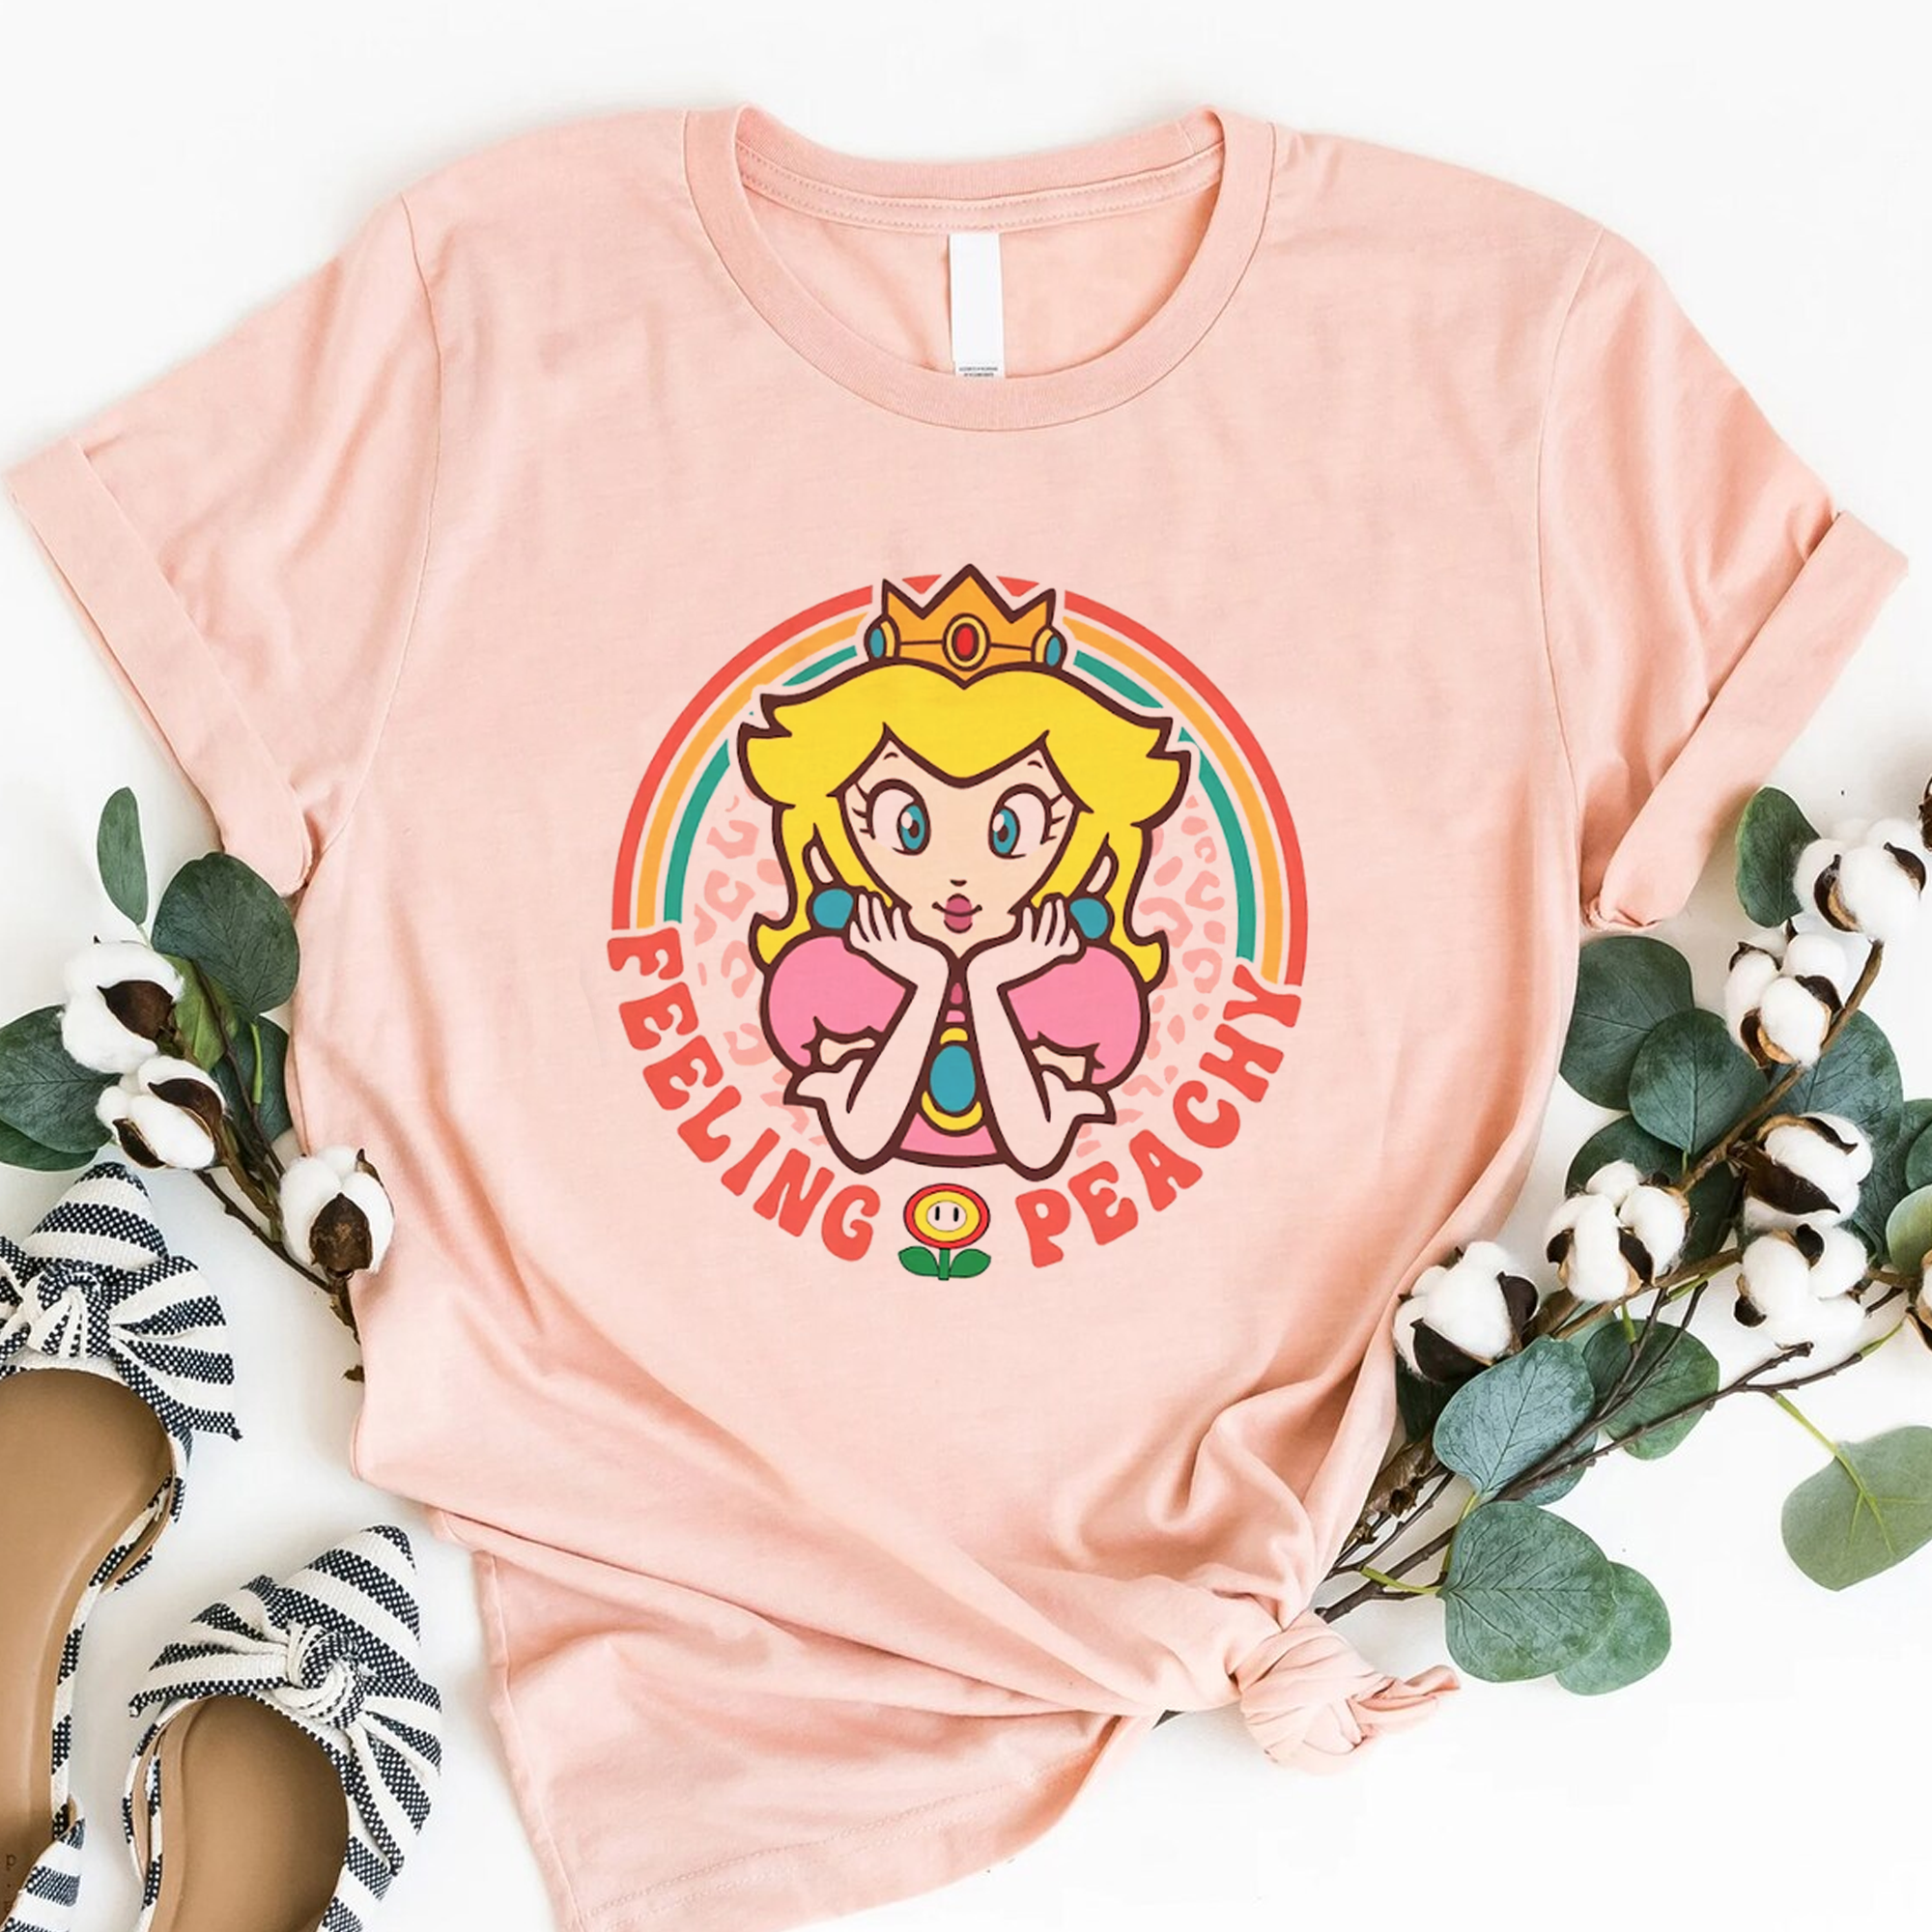 Retro Princess Peach Mario Shirt, Feeling Peachy Tshirt, Super Mario Birthday Shirts, Birthday Gift for Her